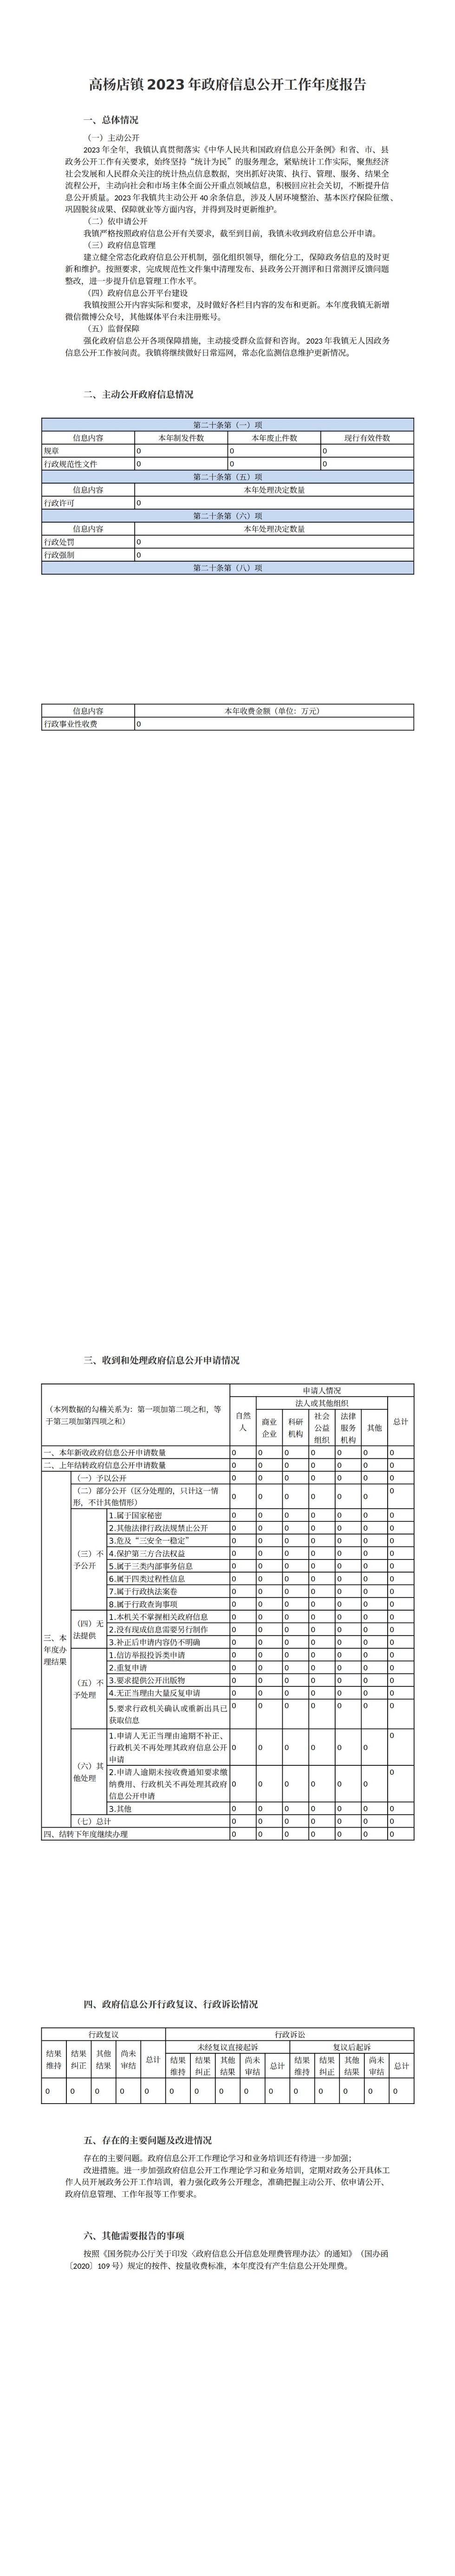 高杨店镇2023年政府信息公开工作年度报告_00.jpg